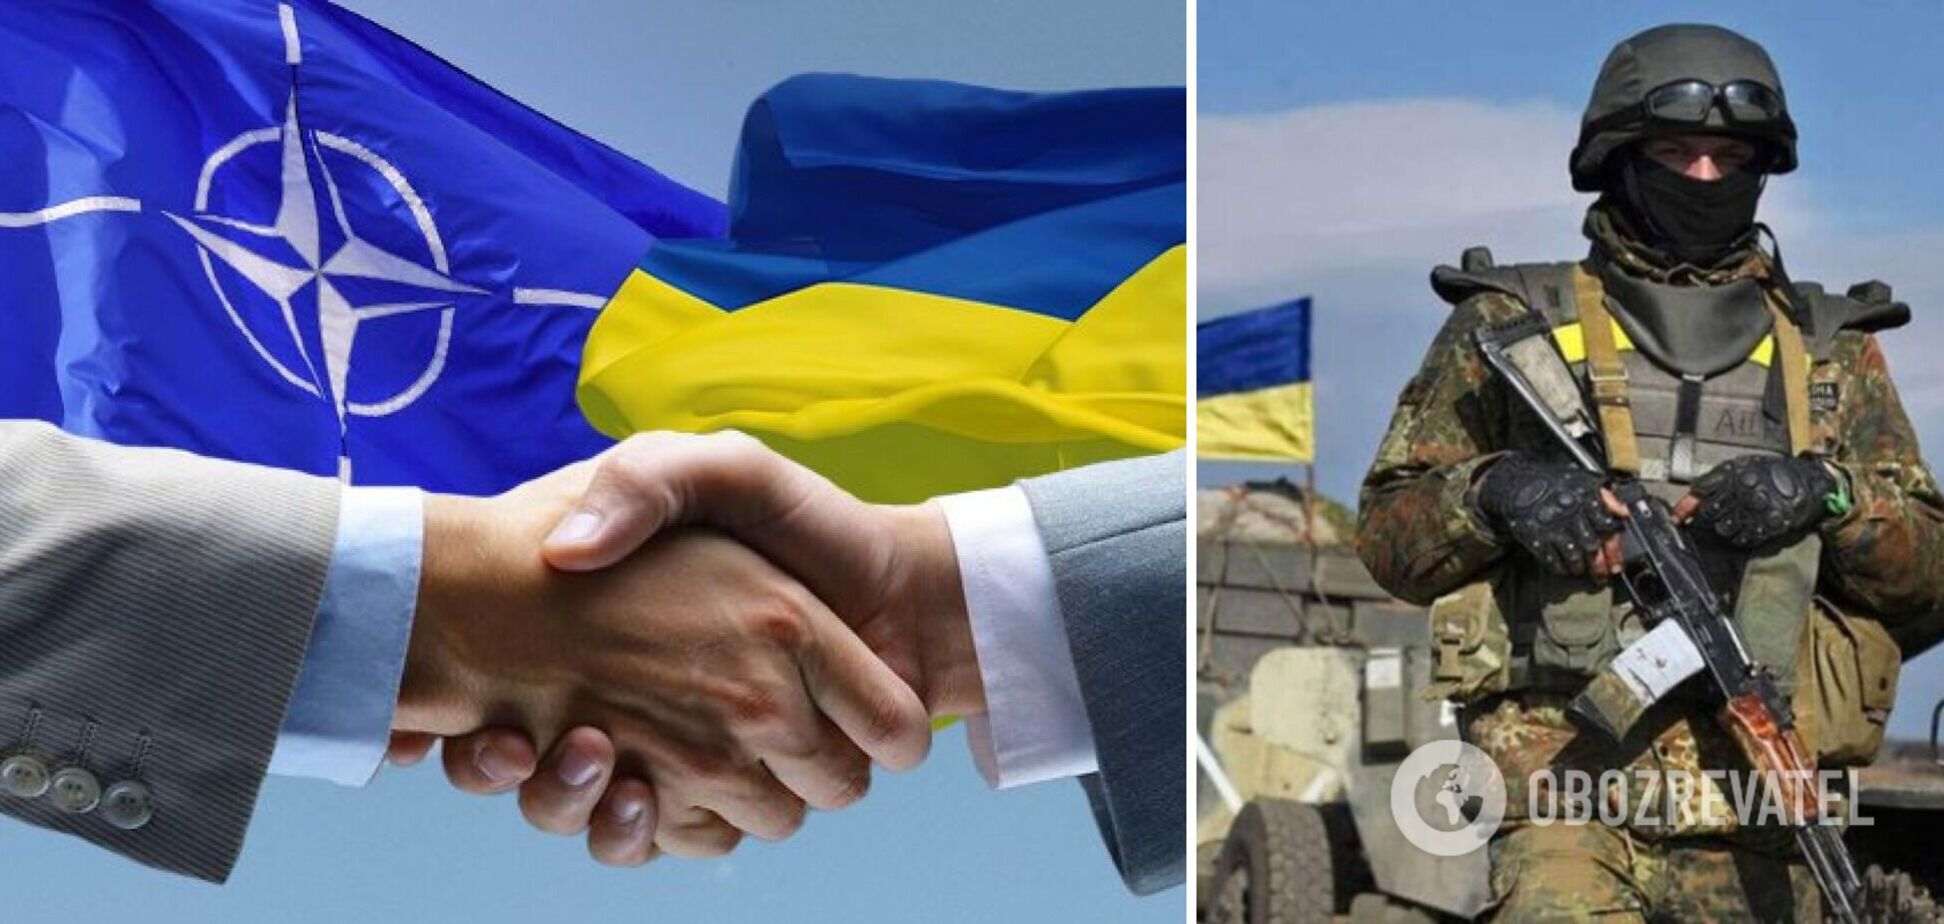 Время взрослых: европейцы проходят путь отрезвления вслед за Украиной